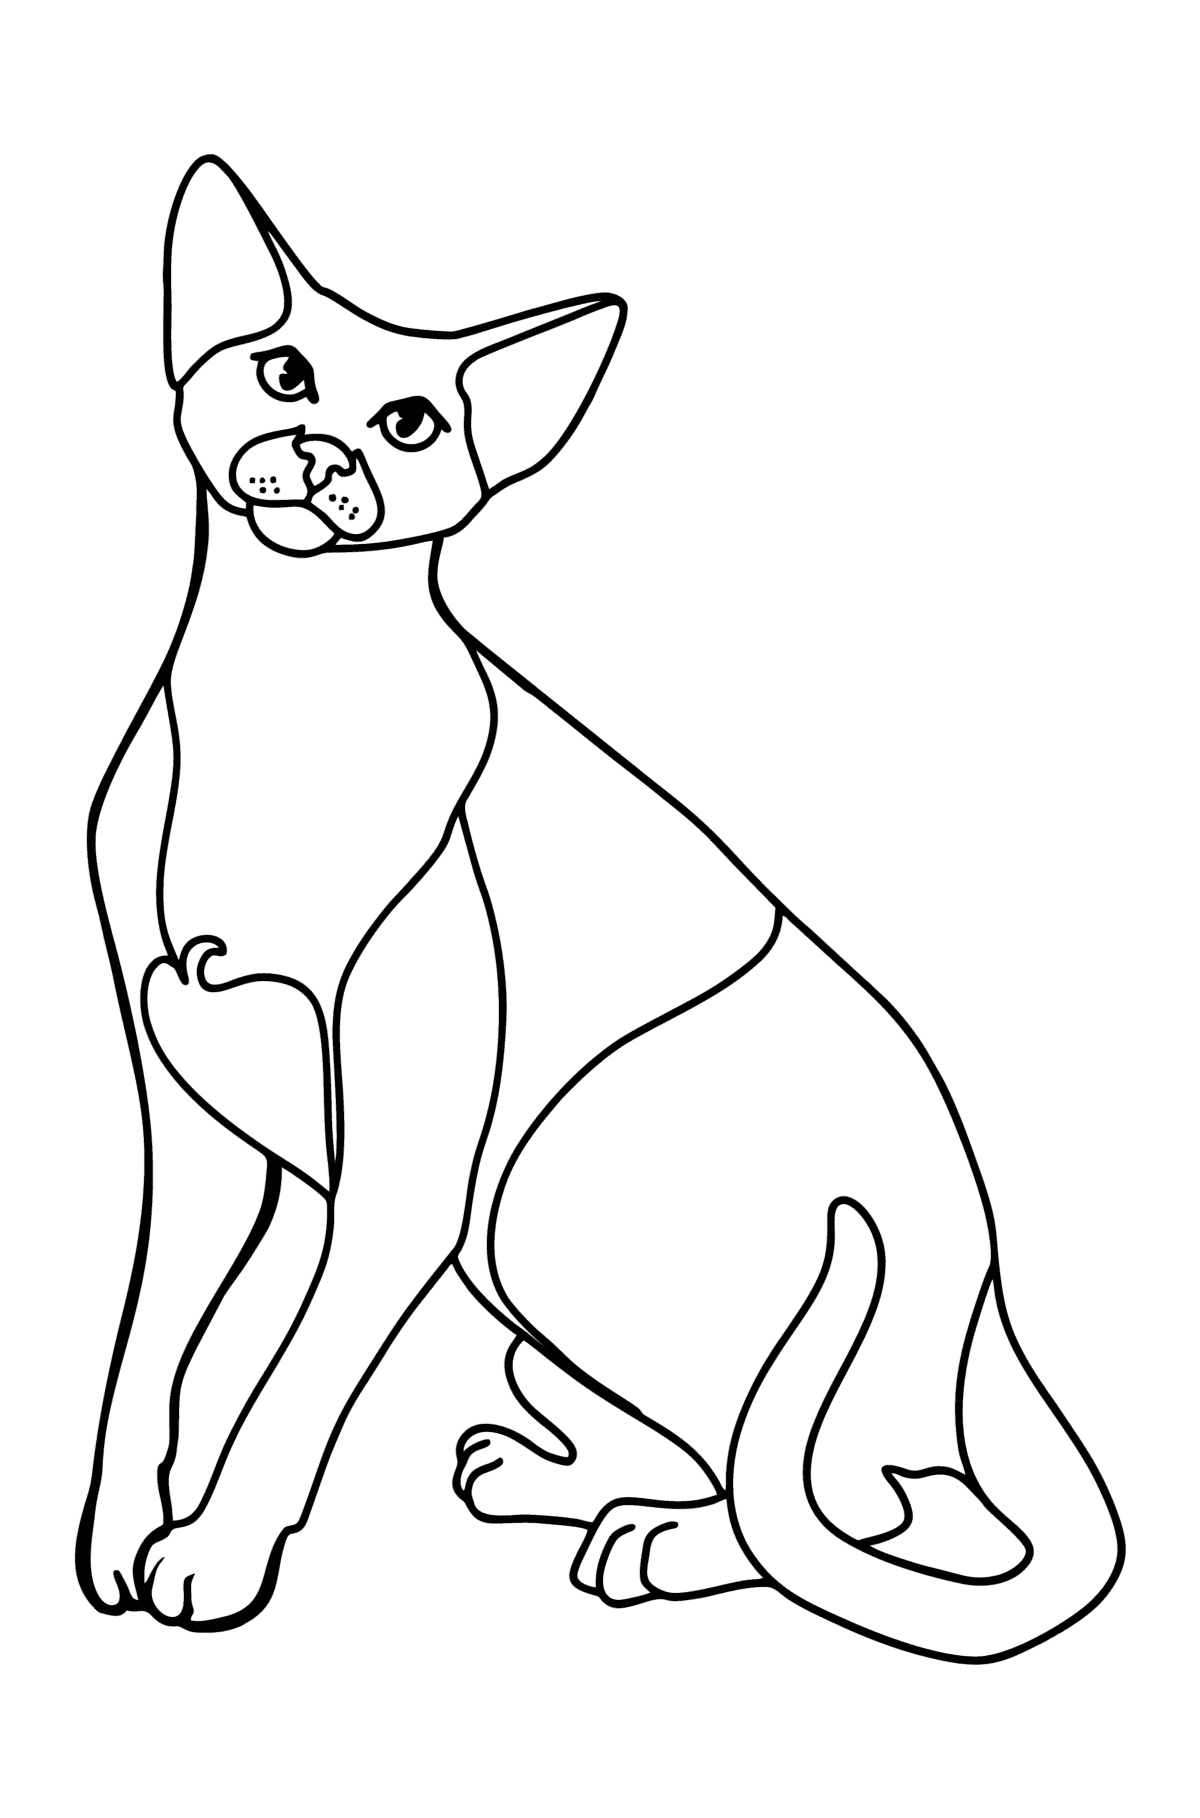 Boyama sayfası oryantal kısa tüylü kedi - Boyamalar çocuklar için